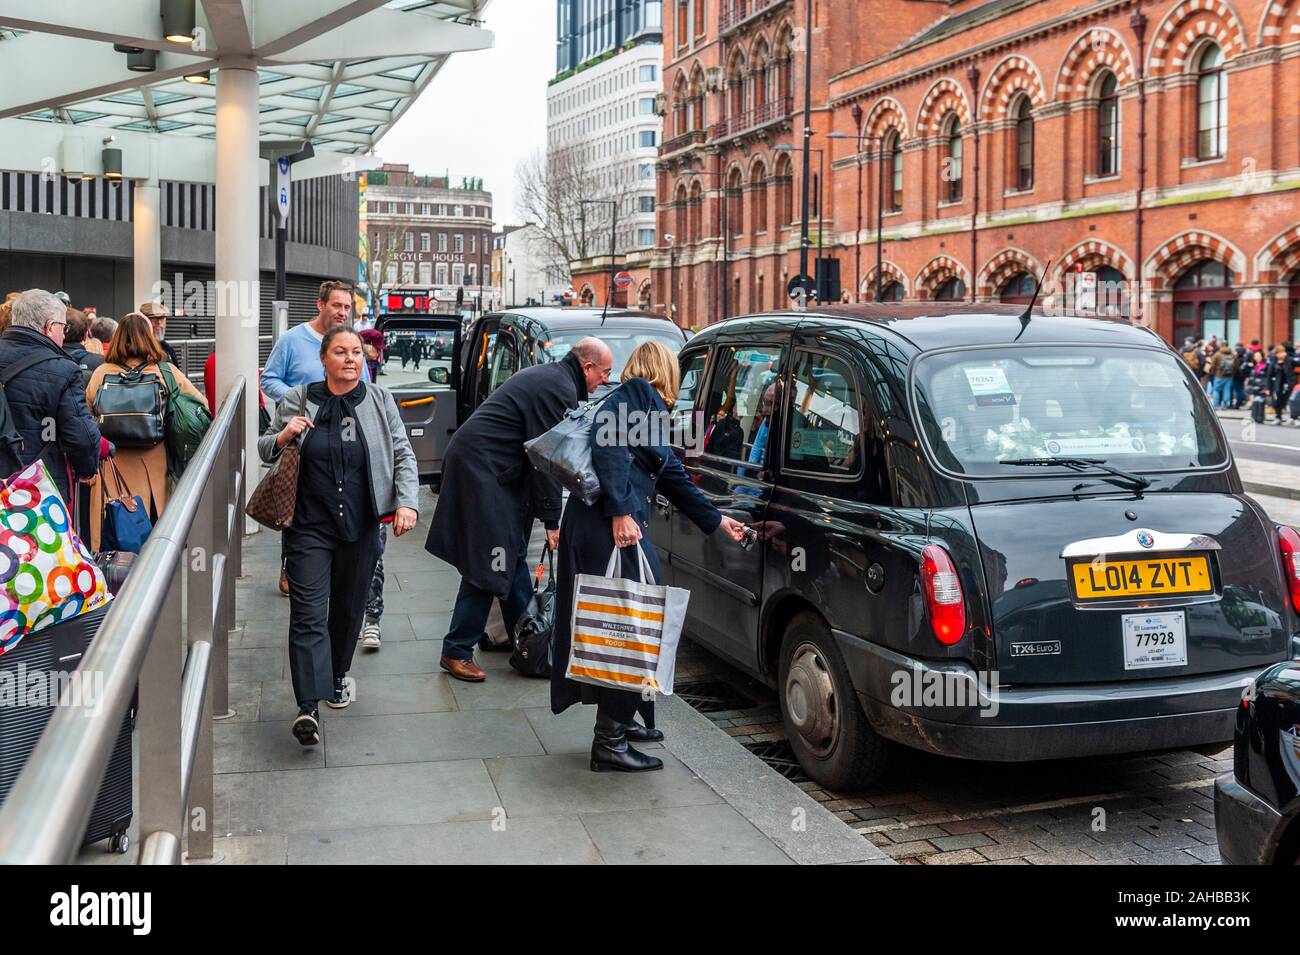 Les passagers monter dans des taxis à l'extérieur de la gare St Pancras, London, UK. Banque D'Images